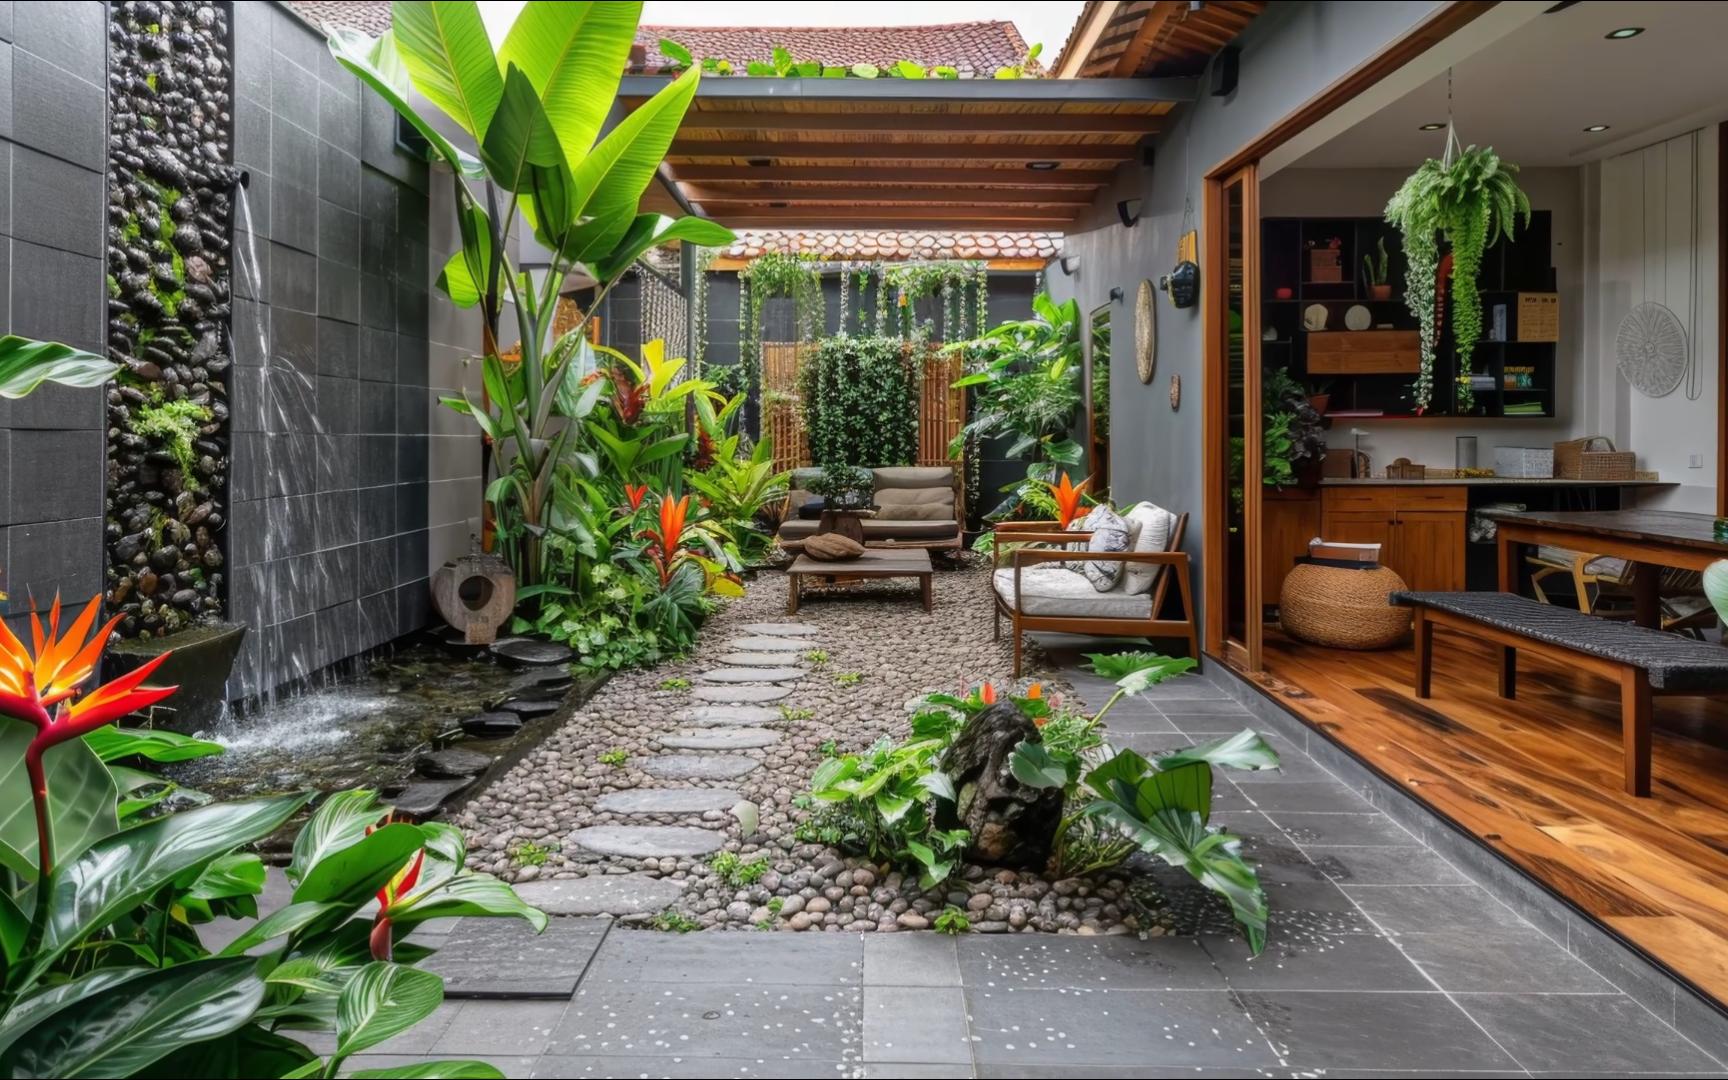 创建您自己的热带天堂： 将后院改造成郁郁葱葱的庭院绿洲指南